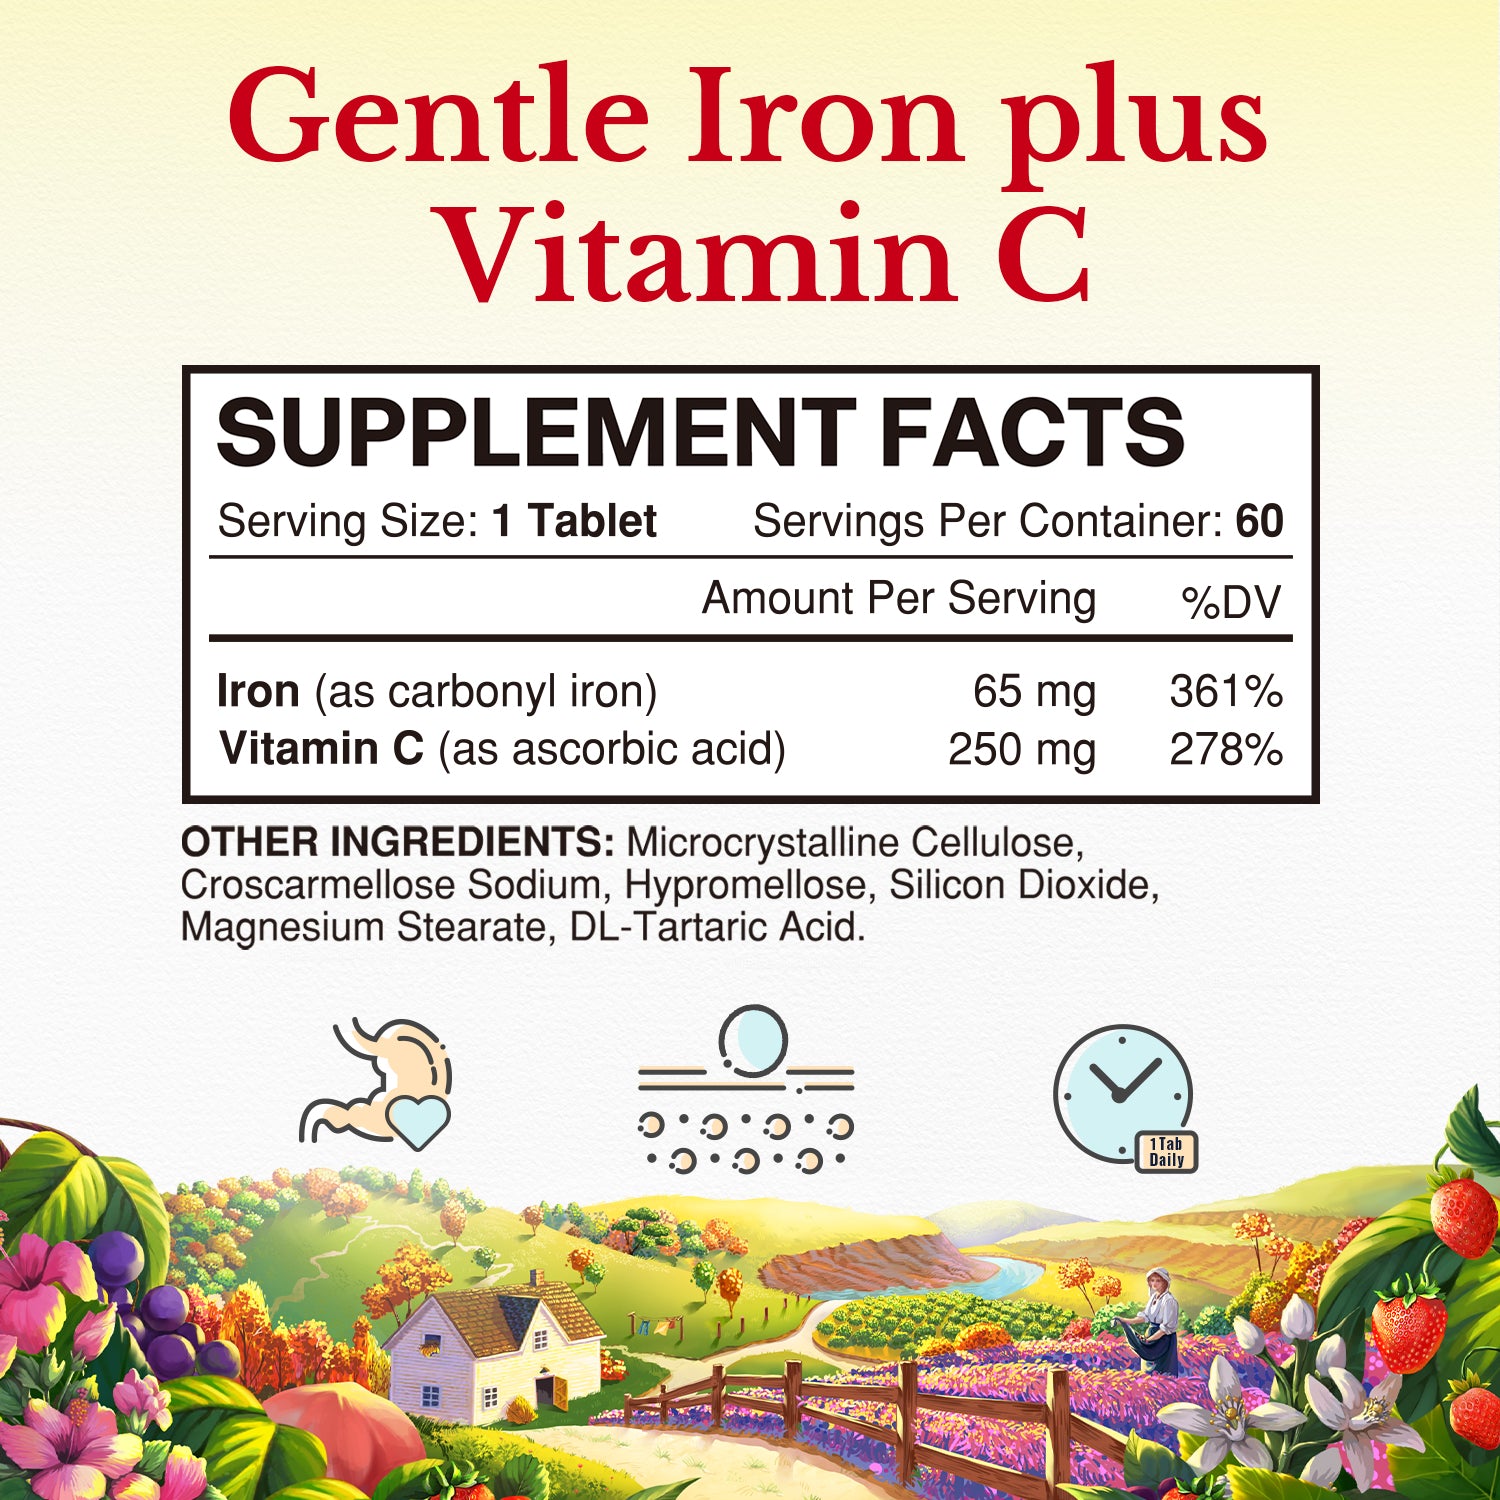 Iron plus Vitamin C